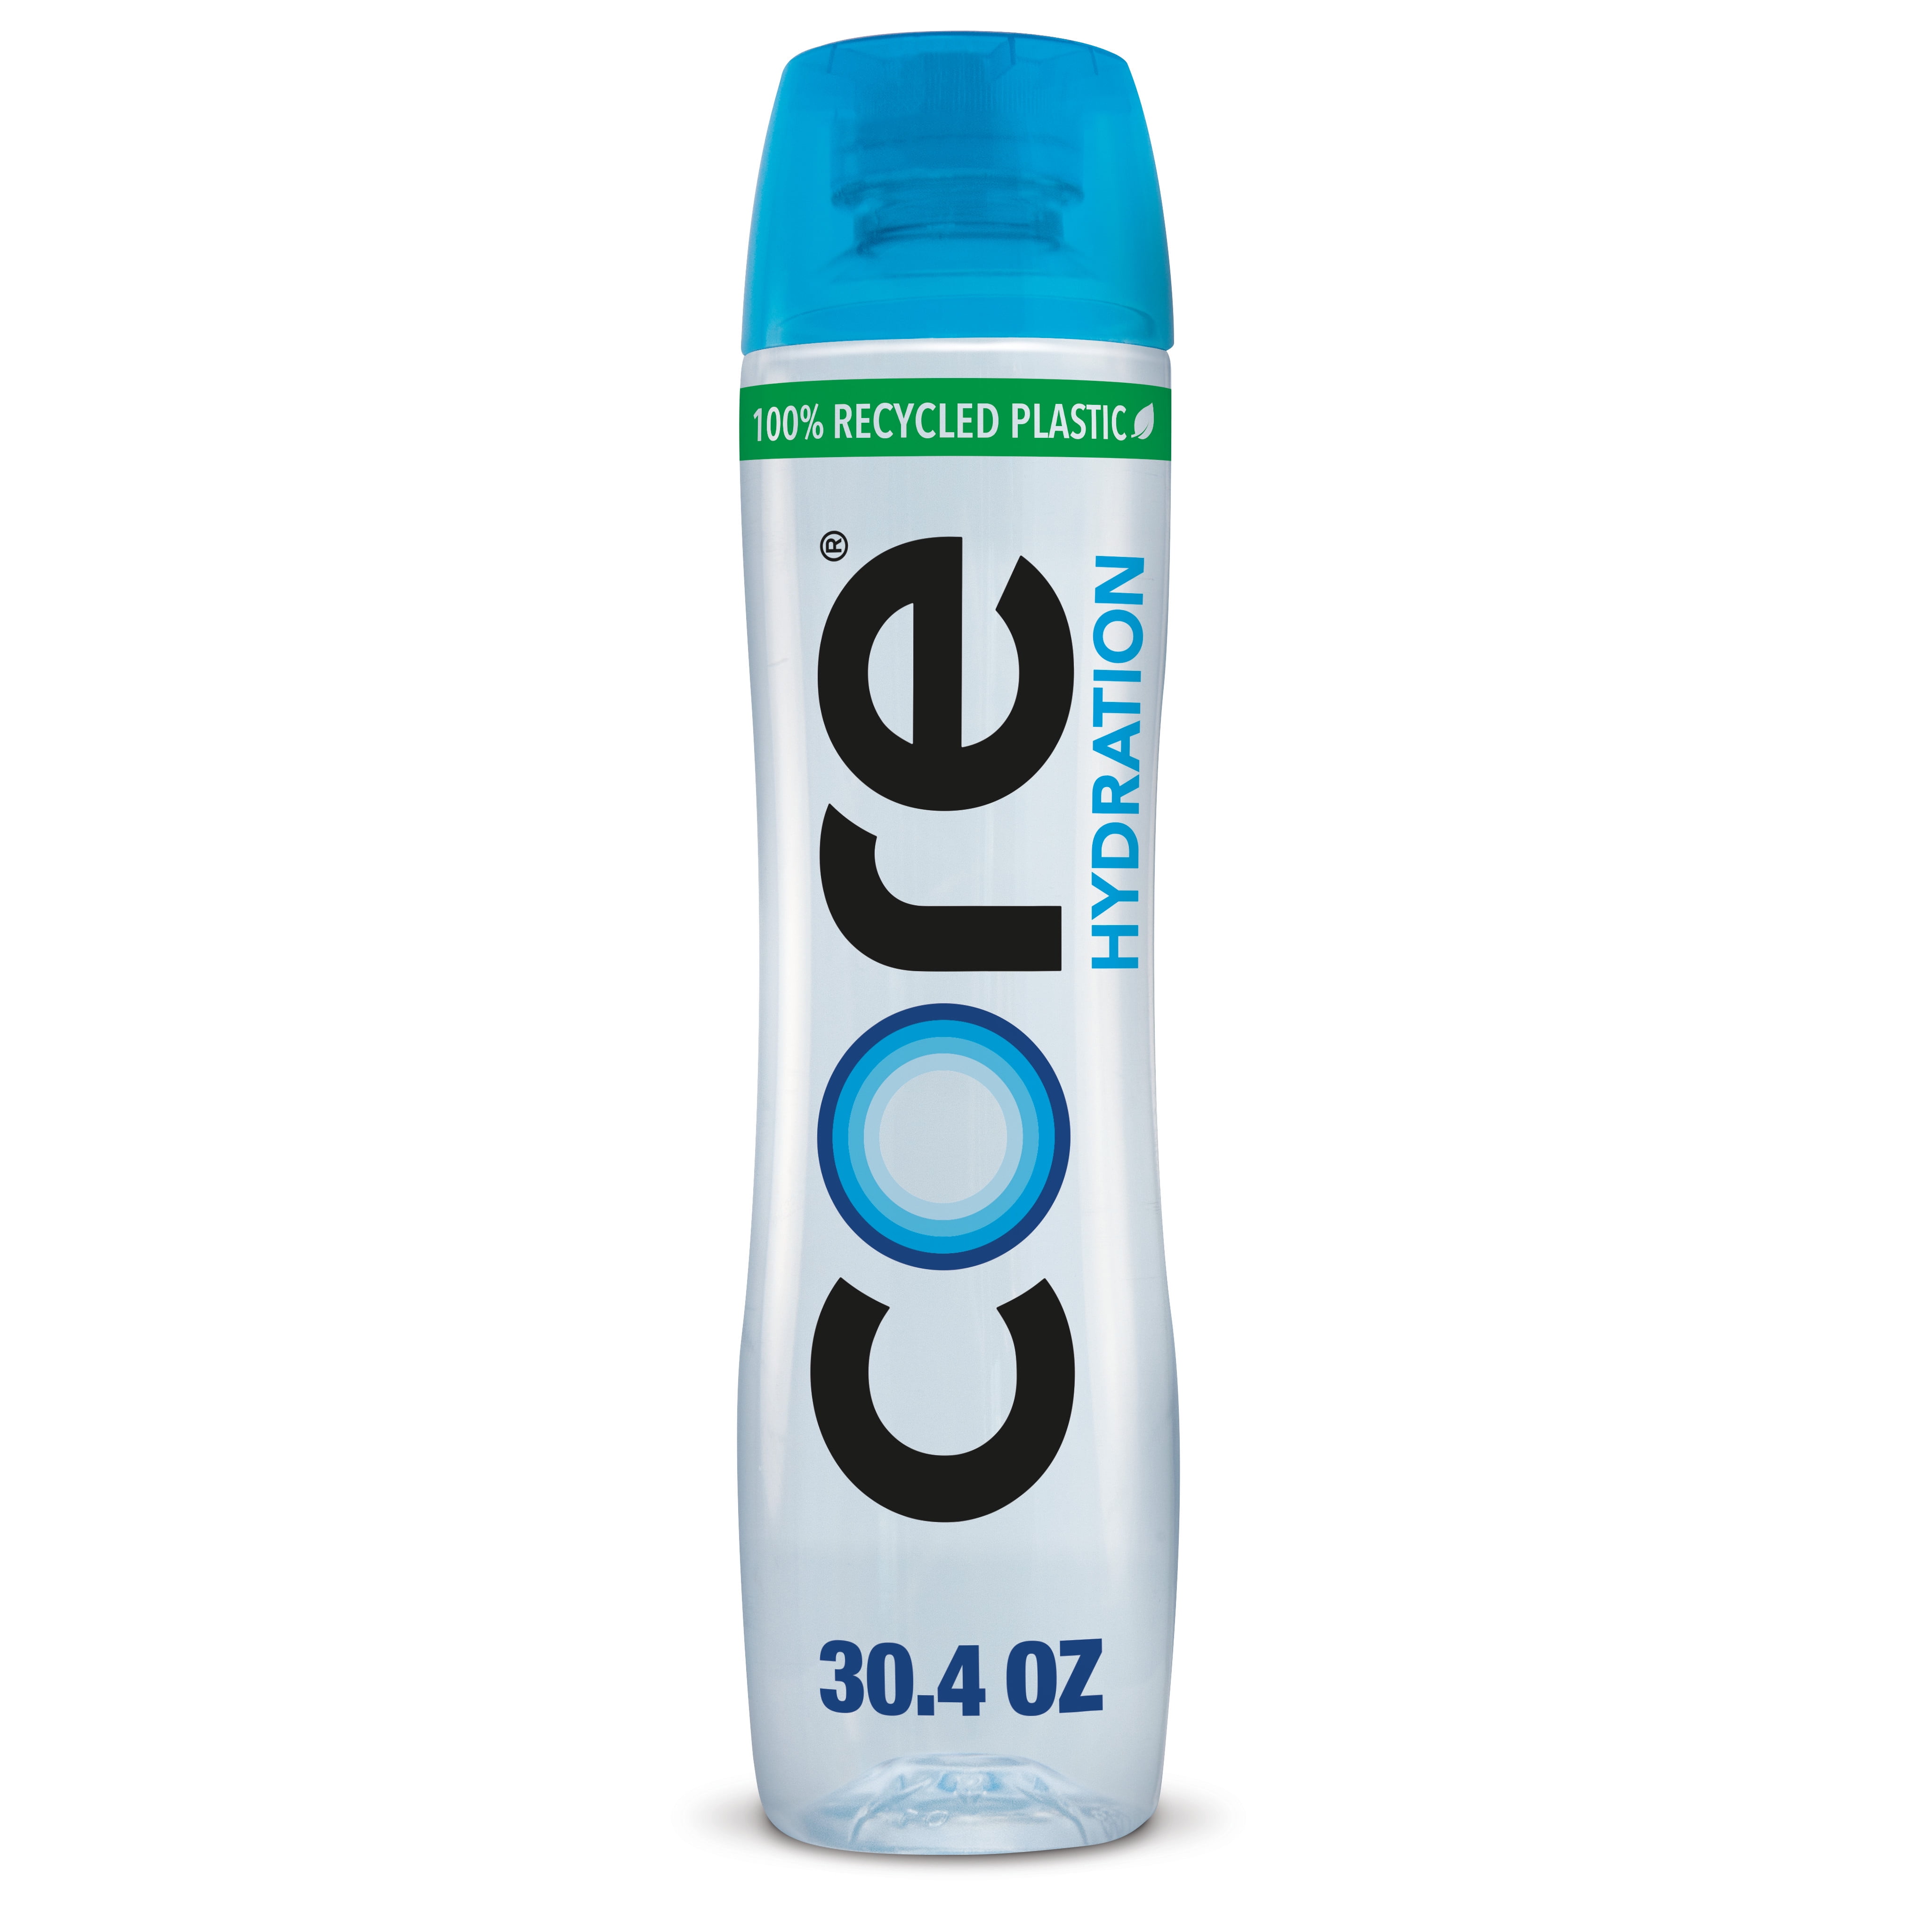 CORE Hydration Nutrient Enhanced Water, 30.4 fl oz bottle